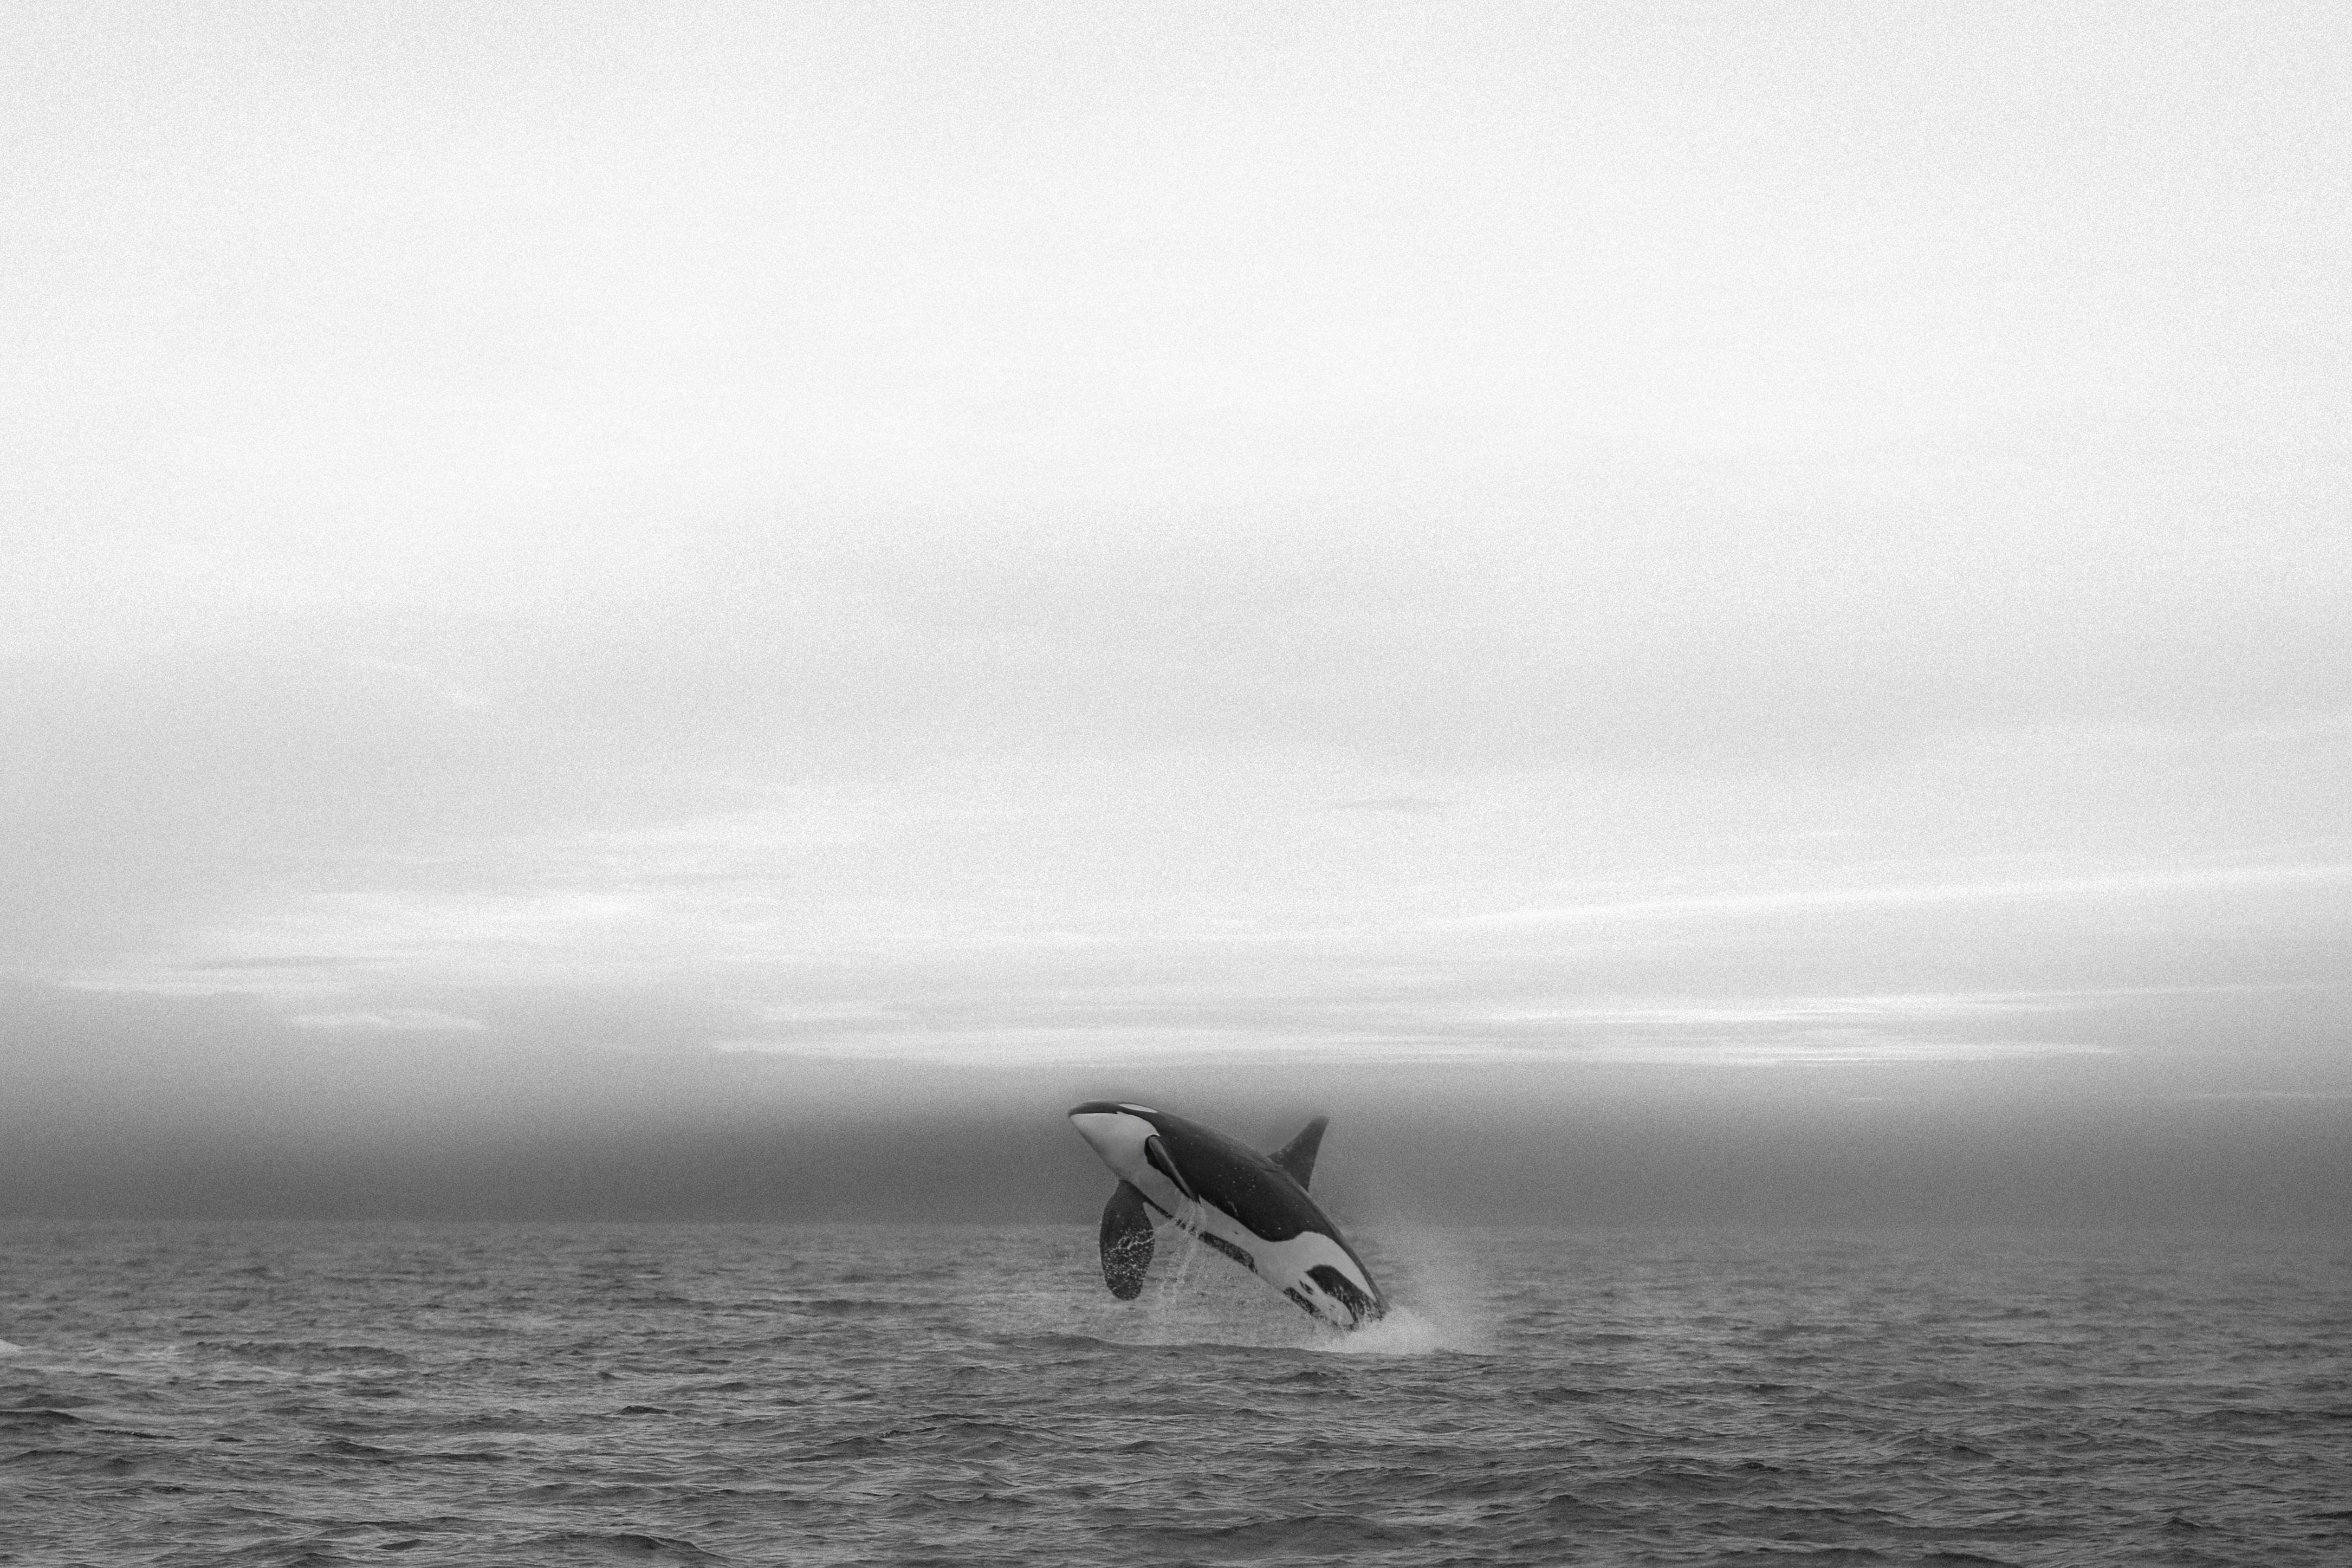 Animal Print Shane Russeck - "Onyx  24x36- Photographie de baleine de chasse Orca Impression d'art 